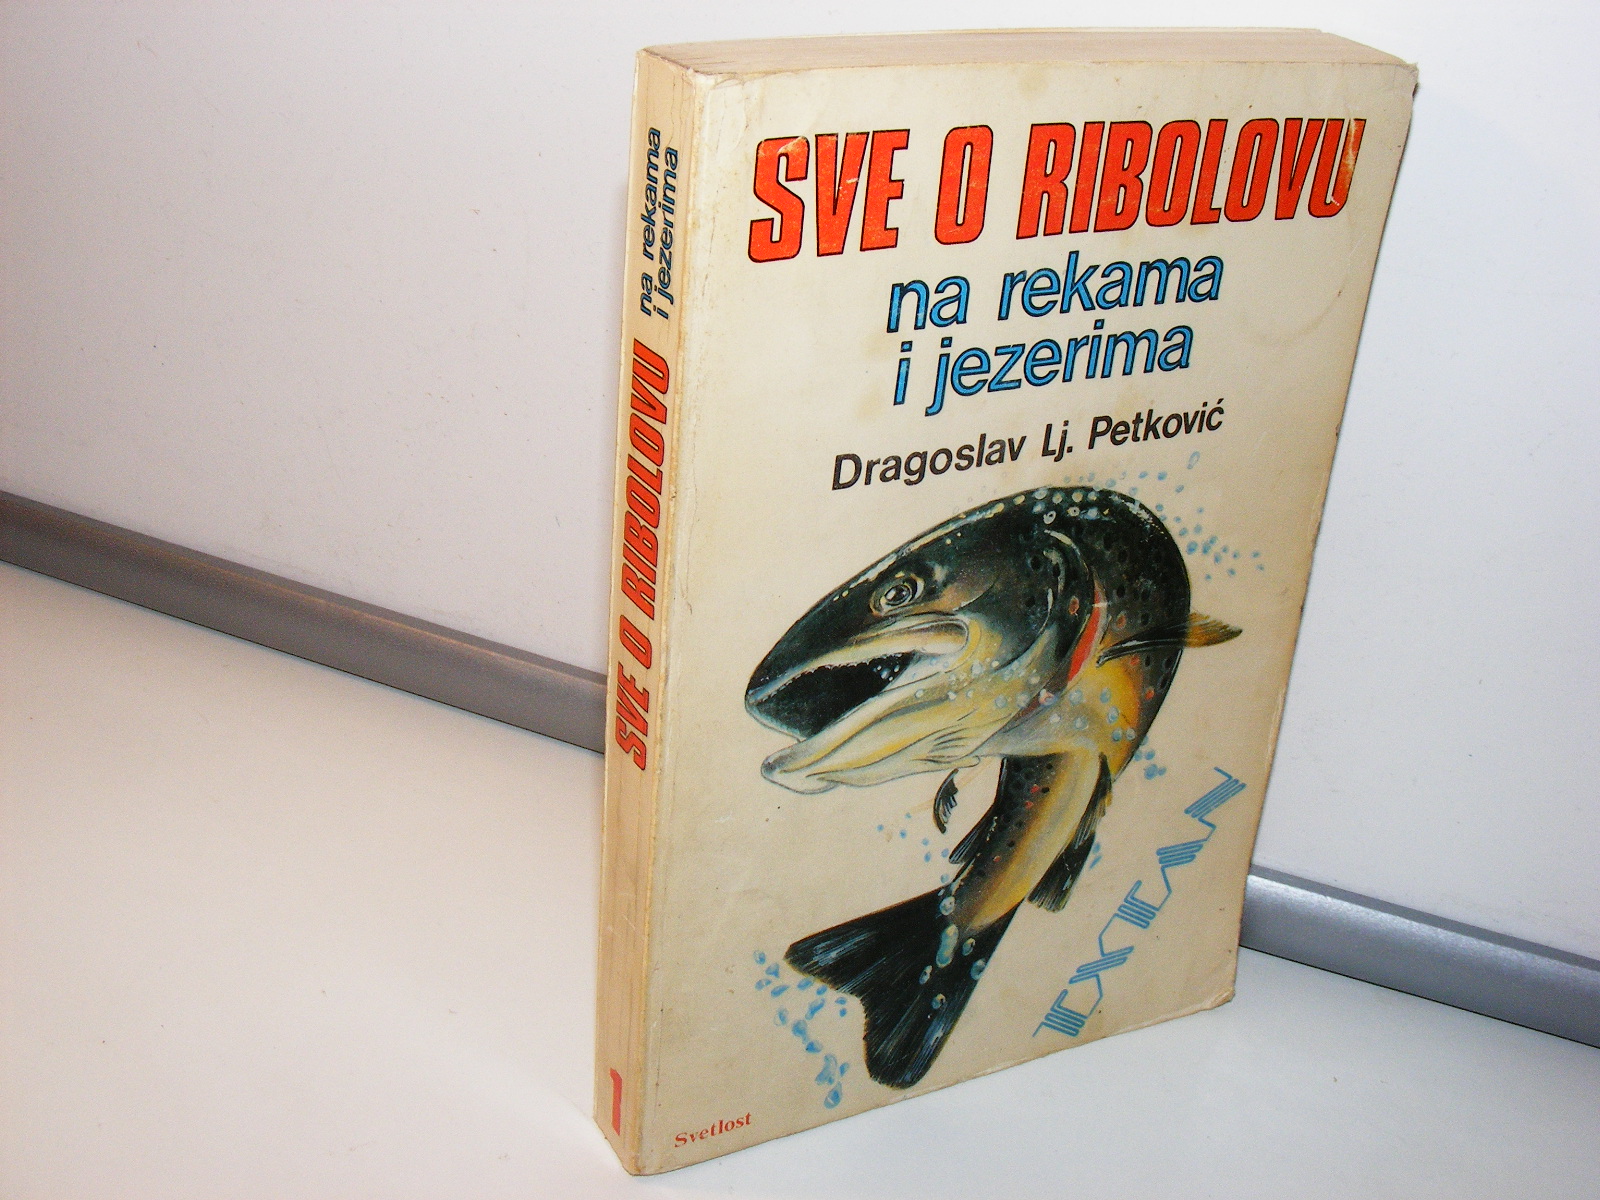 Sve o ribolovu na rekama i jezerima Dragoslav Lj. Petković